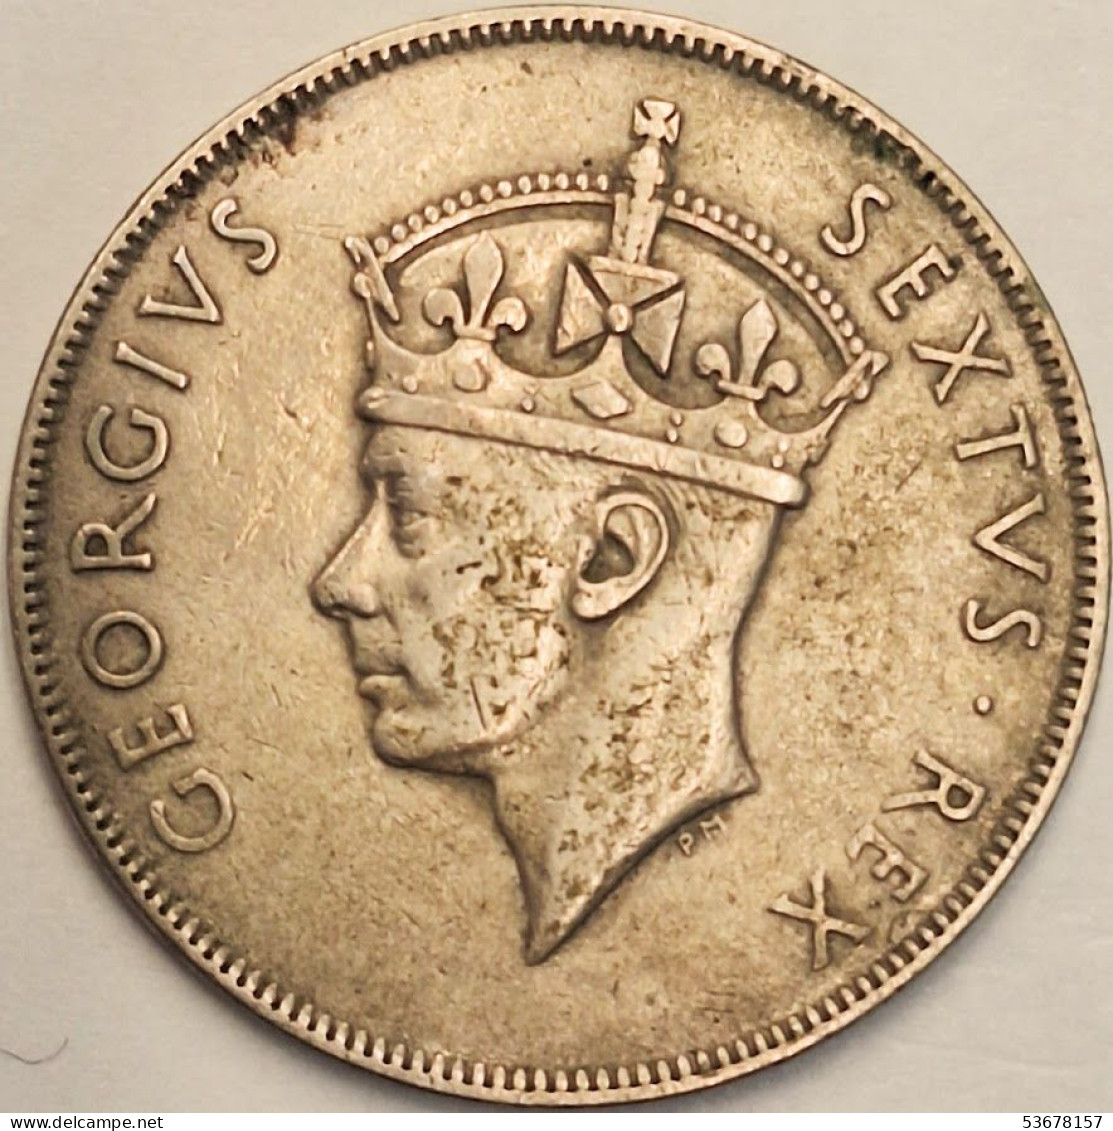 East Africa - Shilling 1949, KM# 31 (#3808) - Britische Kolonie